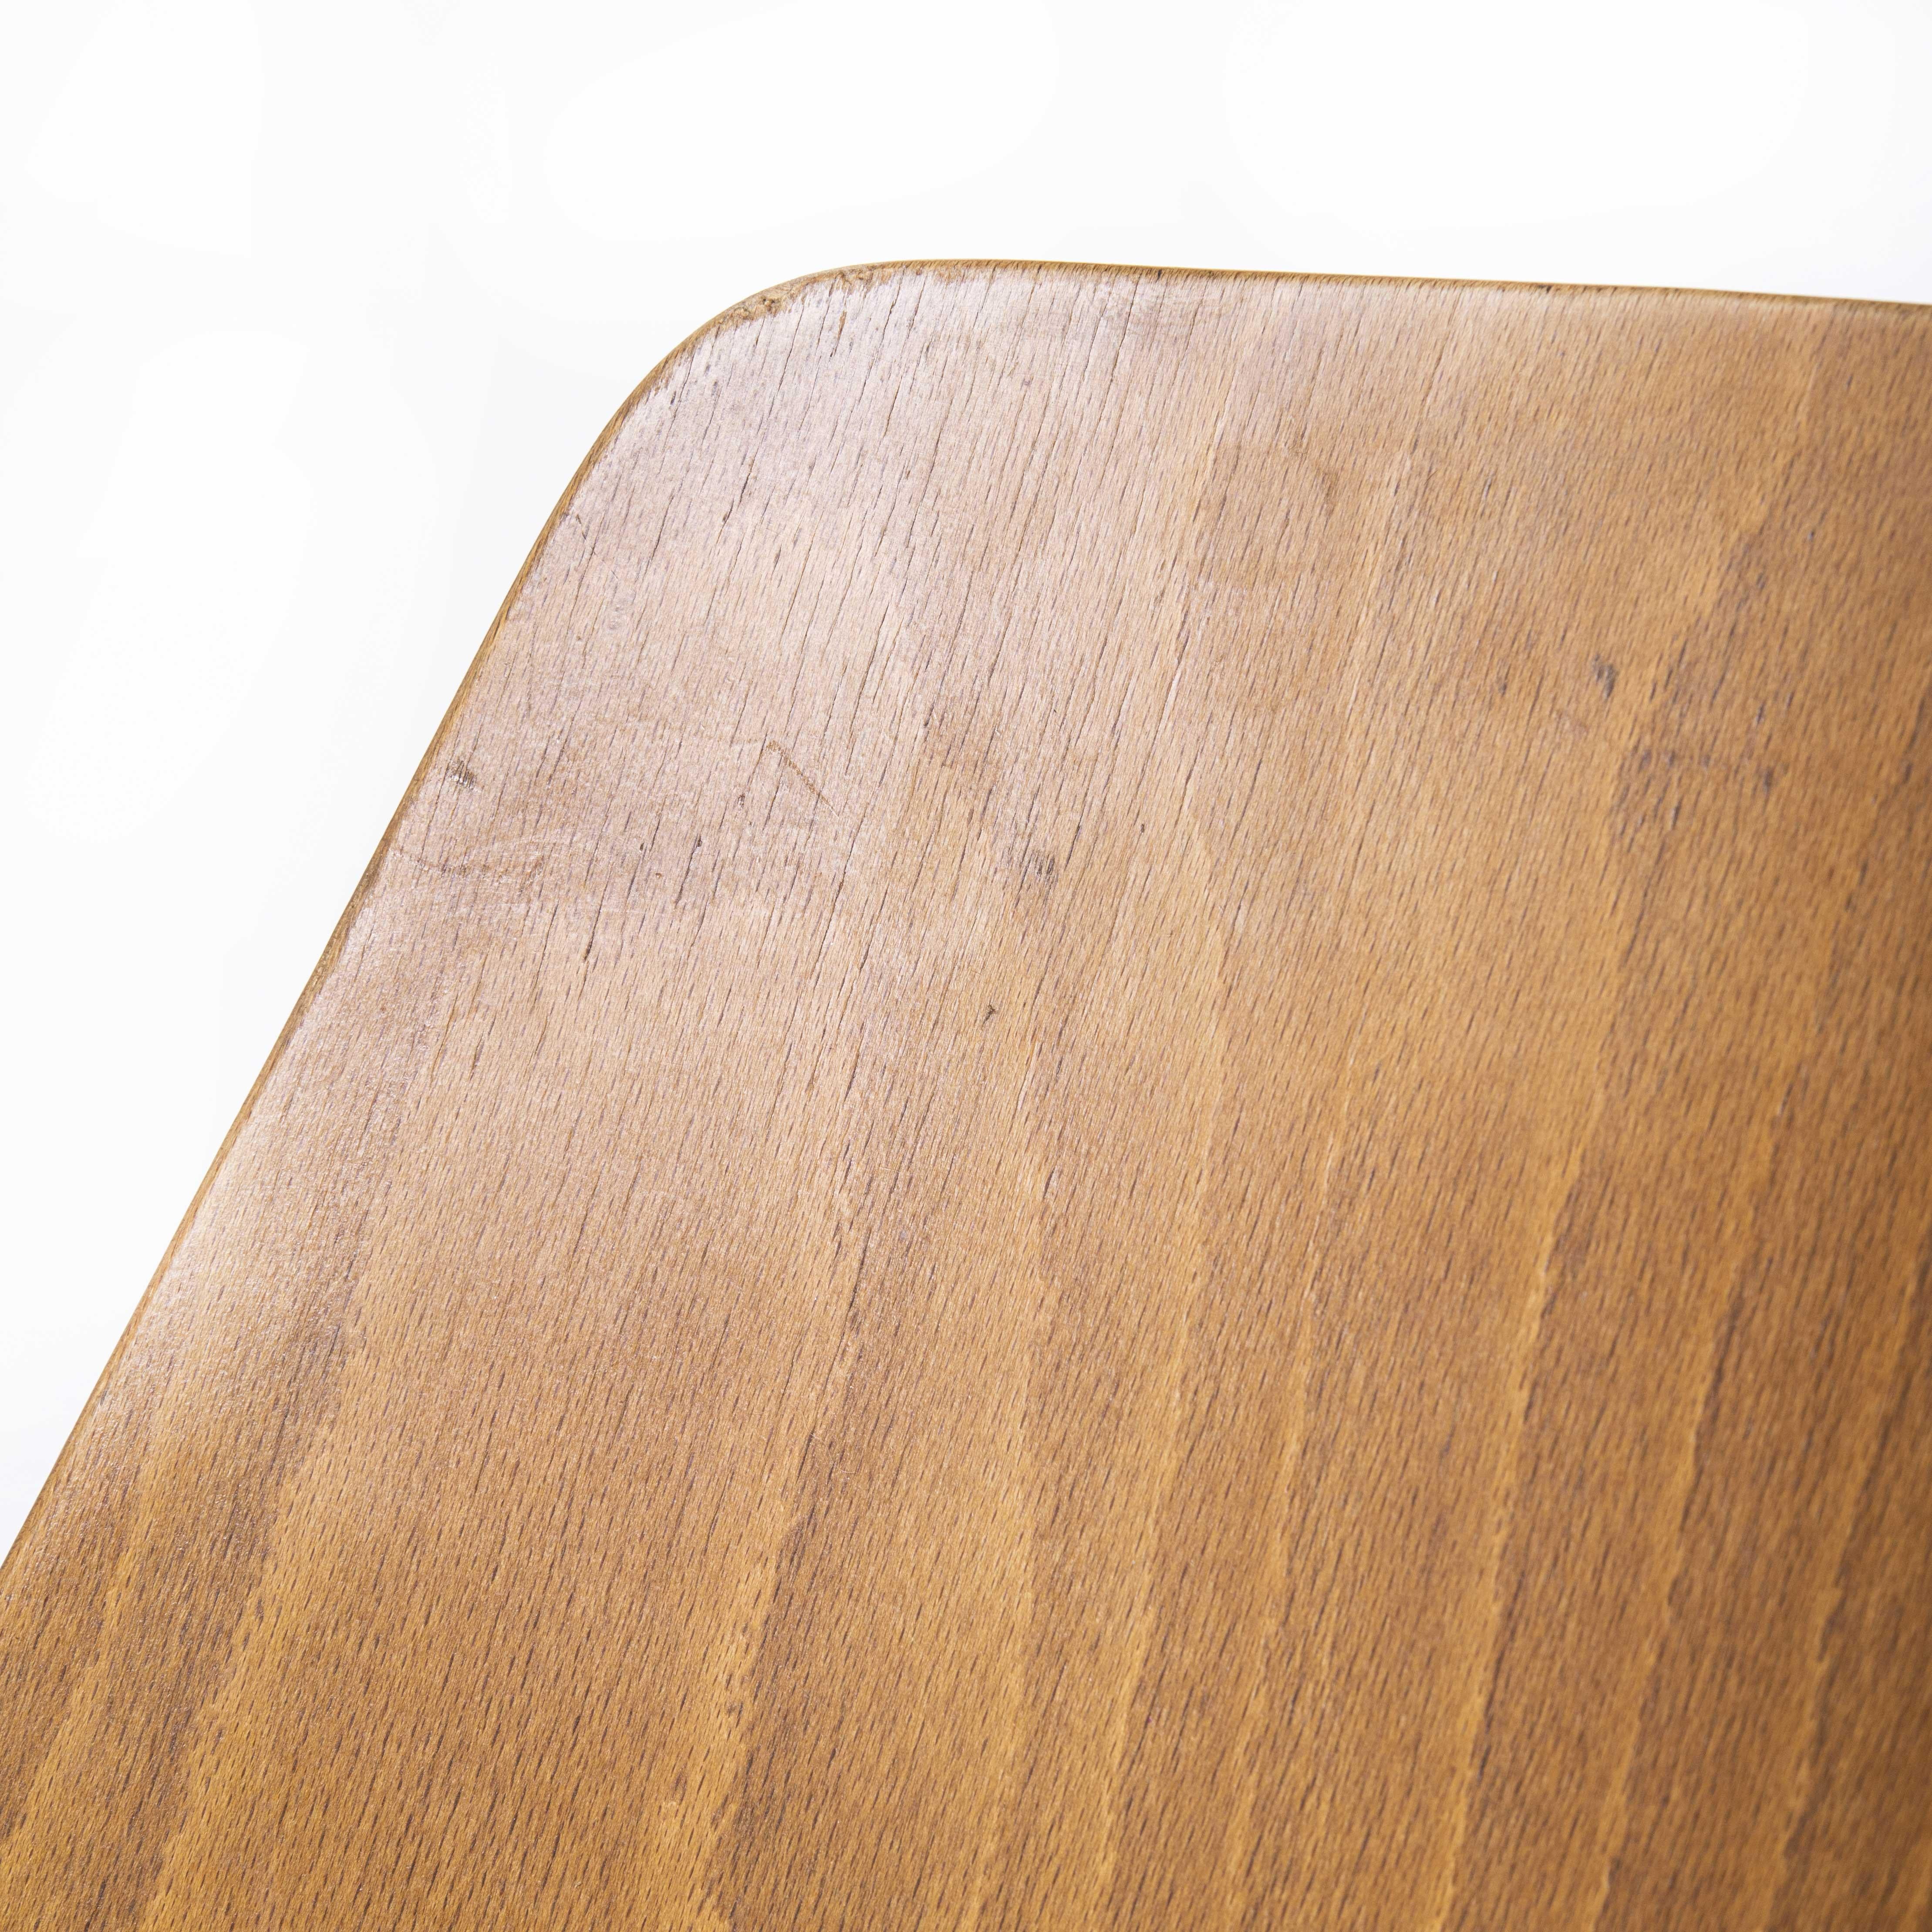 1960’s French Baumann light beech bentwood mondor dining chair – set of six

1960’s French Baumann light beech bentwood mondor dining chair – set of six. Classic beech bistro chair made in France by the maker Joamin Baumann. Baumann is a slightly